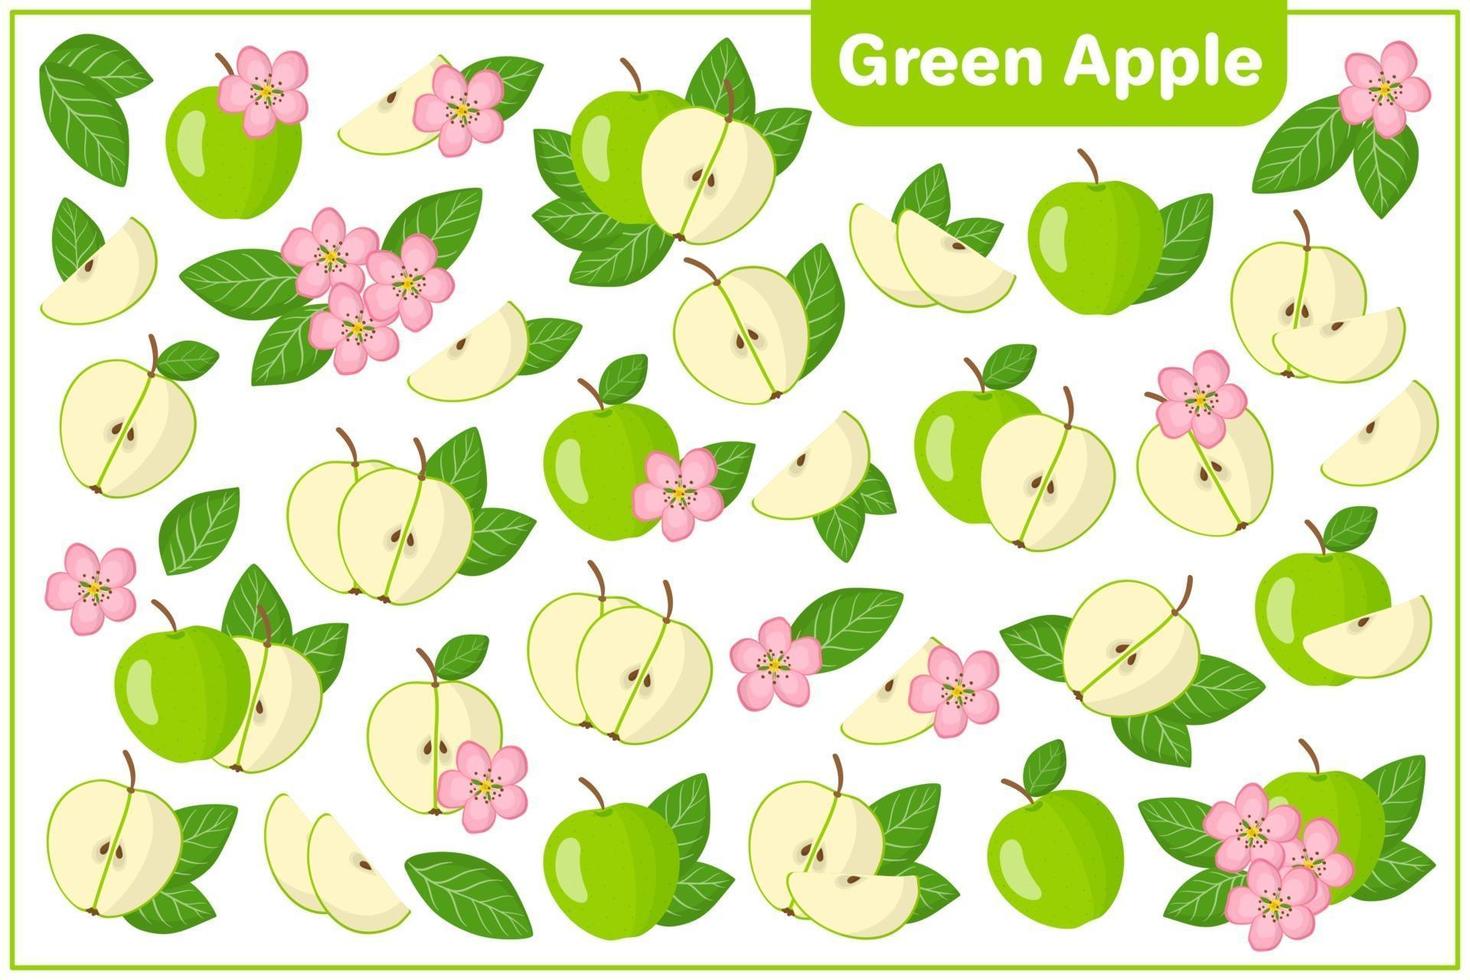 serie di illustrazioni vettoriali di cartone animato con frutta esotica mela verde, fiori e foglie isolati su backgroundv bianco